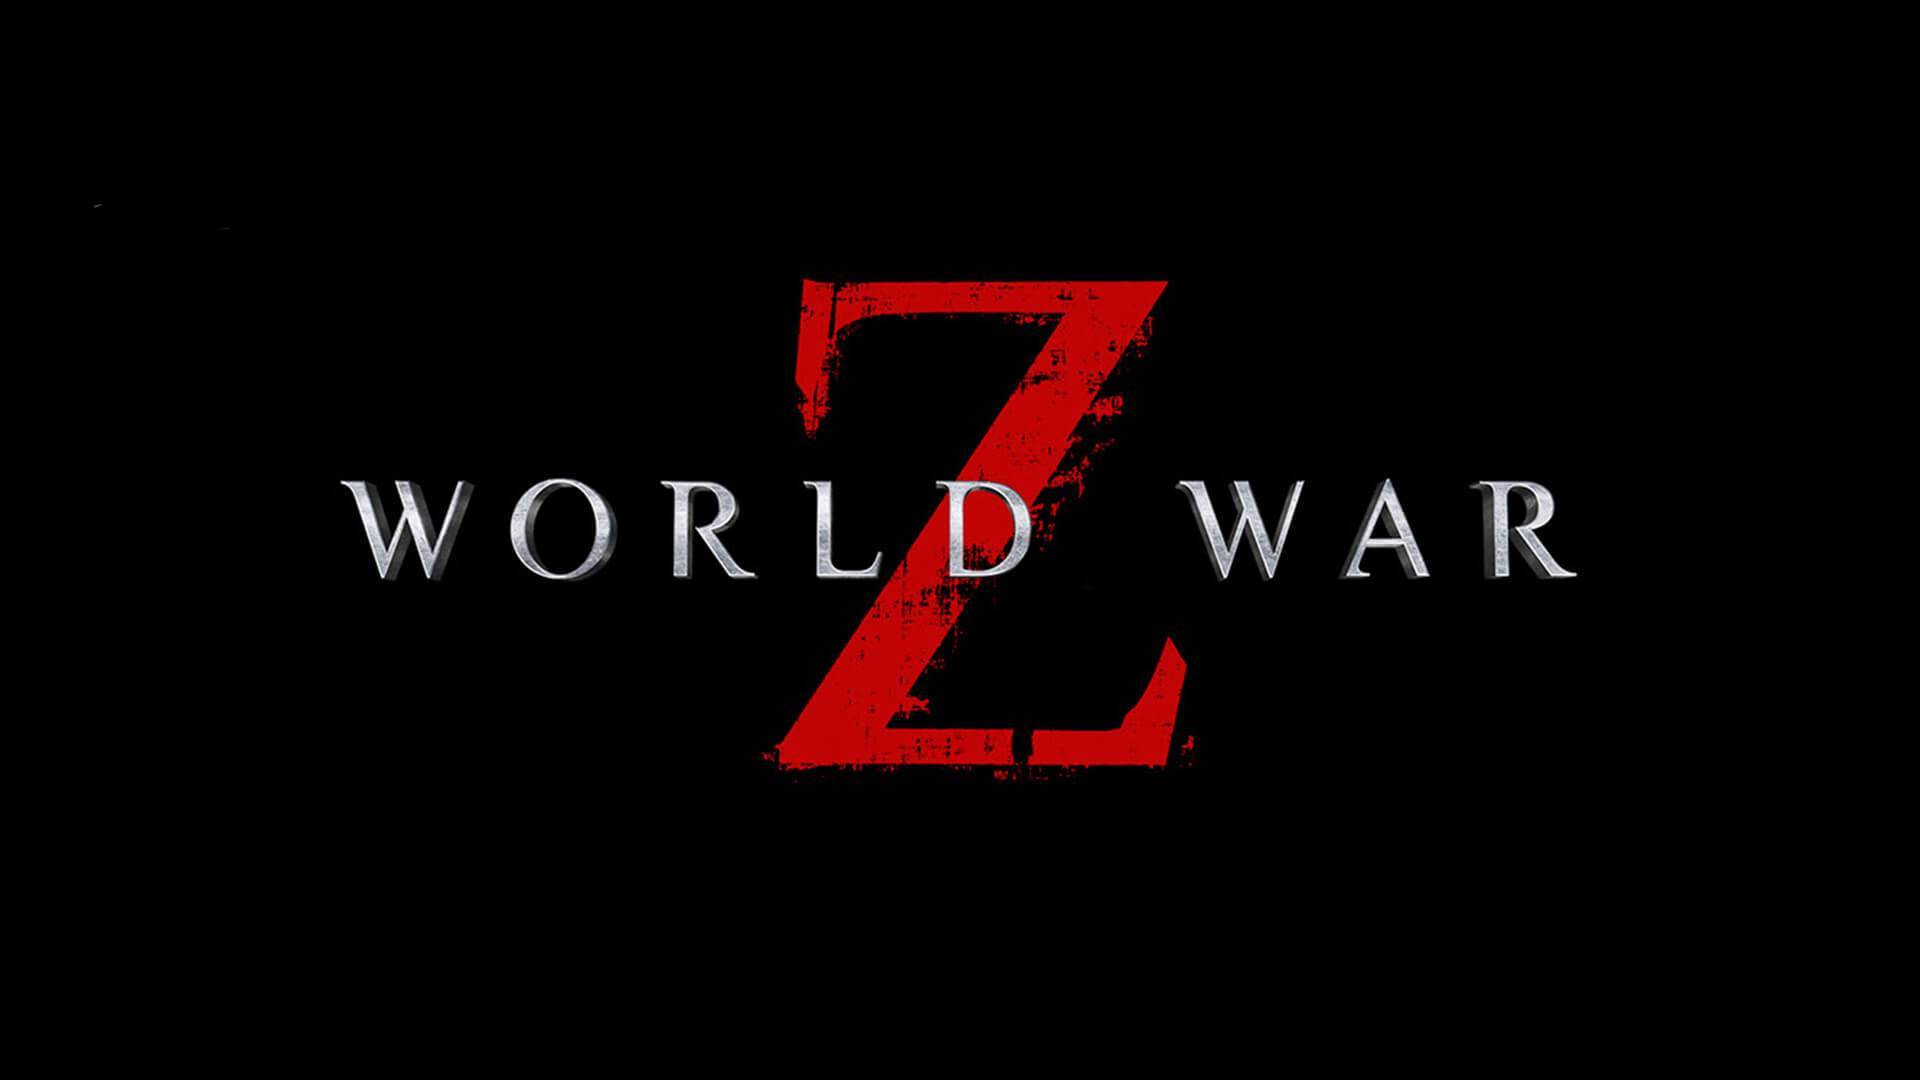 World War Z, novo capítulo de Tell Me Why e mais jogos são anunciados para  Xbox